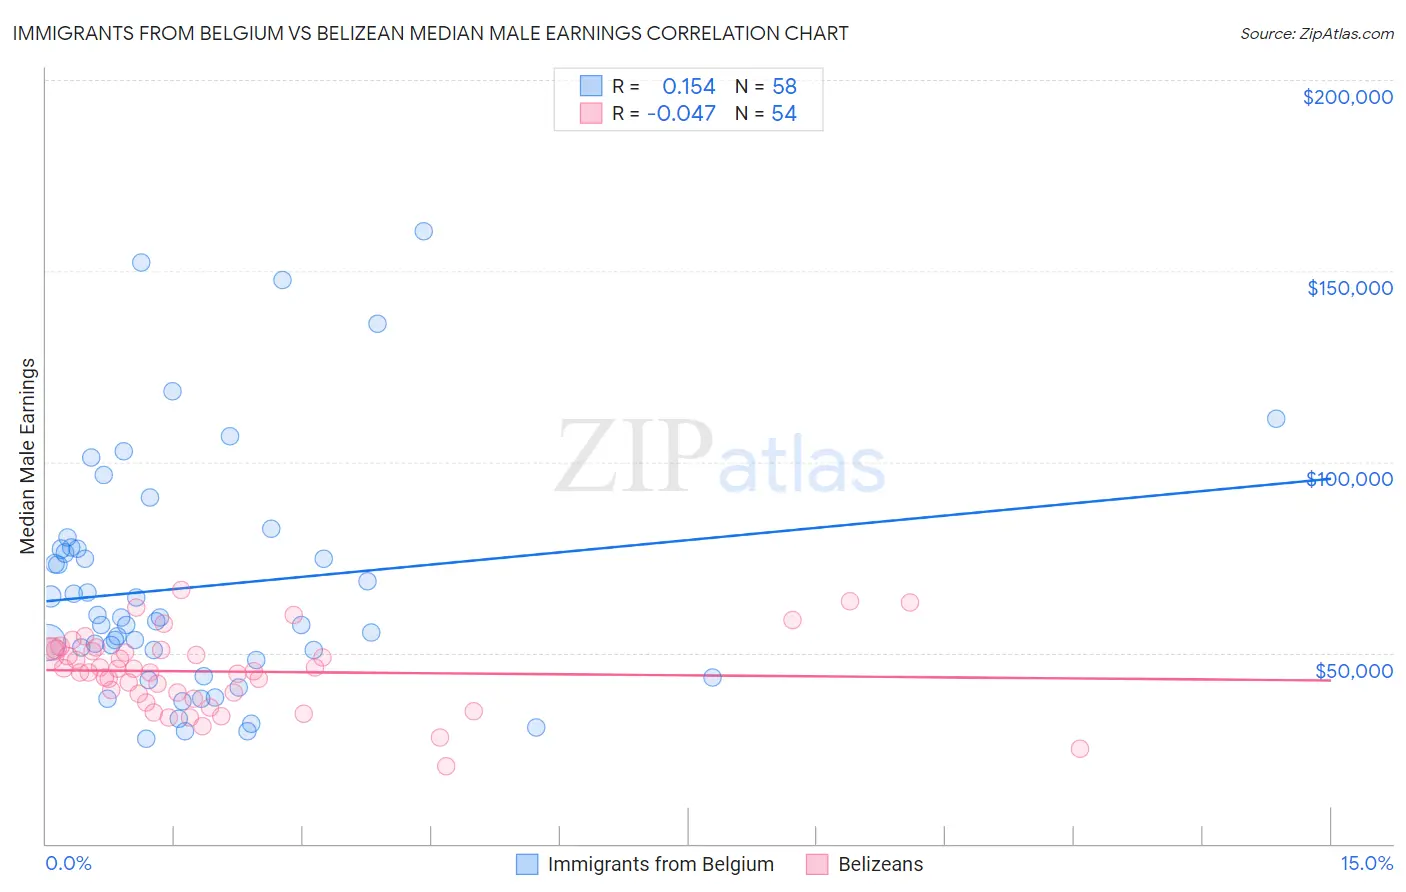 Immigrants from Belgium vs Belizean Median Male Earnings